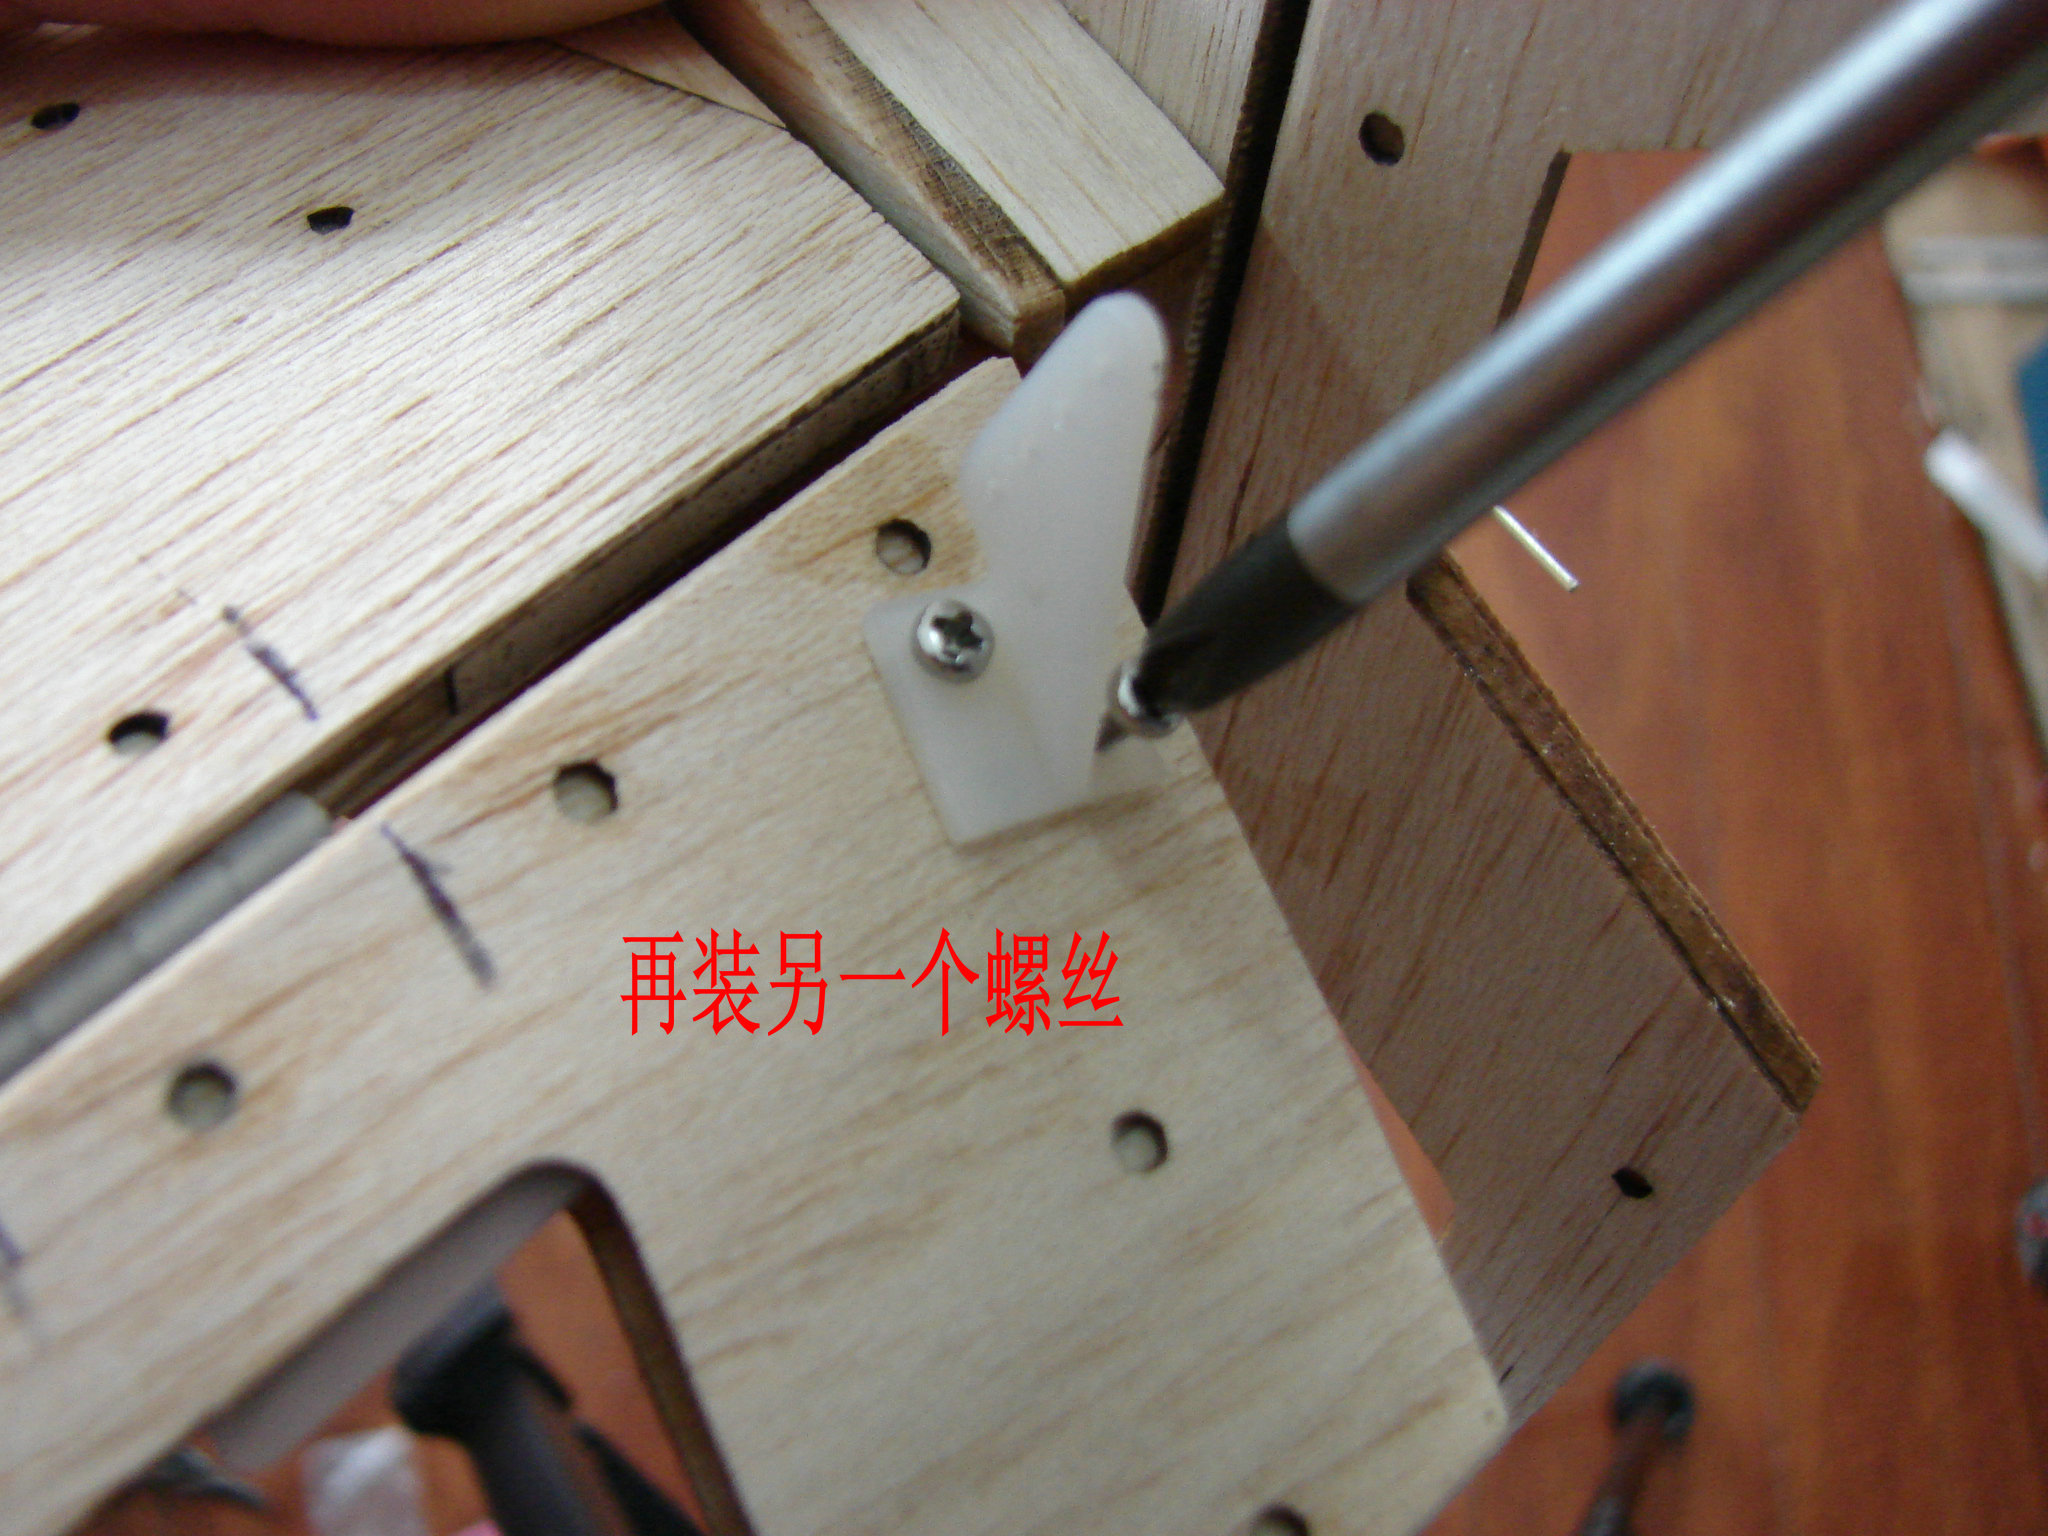 轻木塞斯纳182套材组装教程 给大家参考用图很多 塞斯纳,轻木,轻木哪里有卖 作者:wengchuankuo 9480 